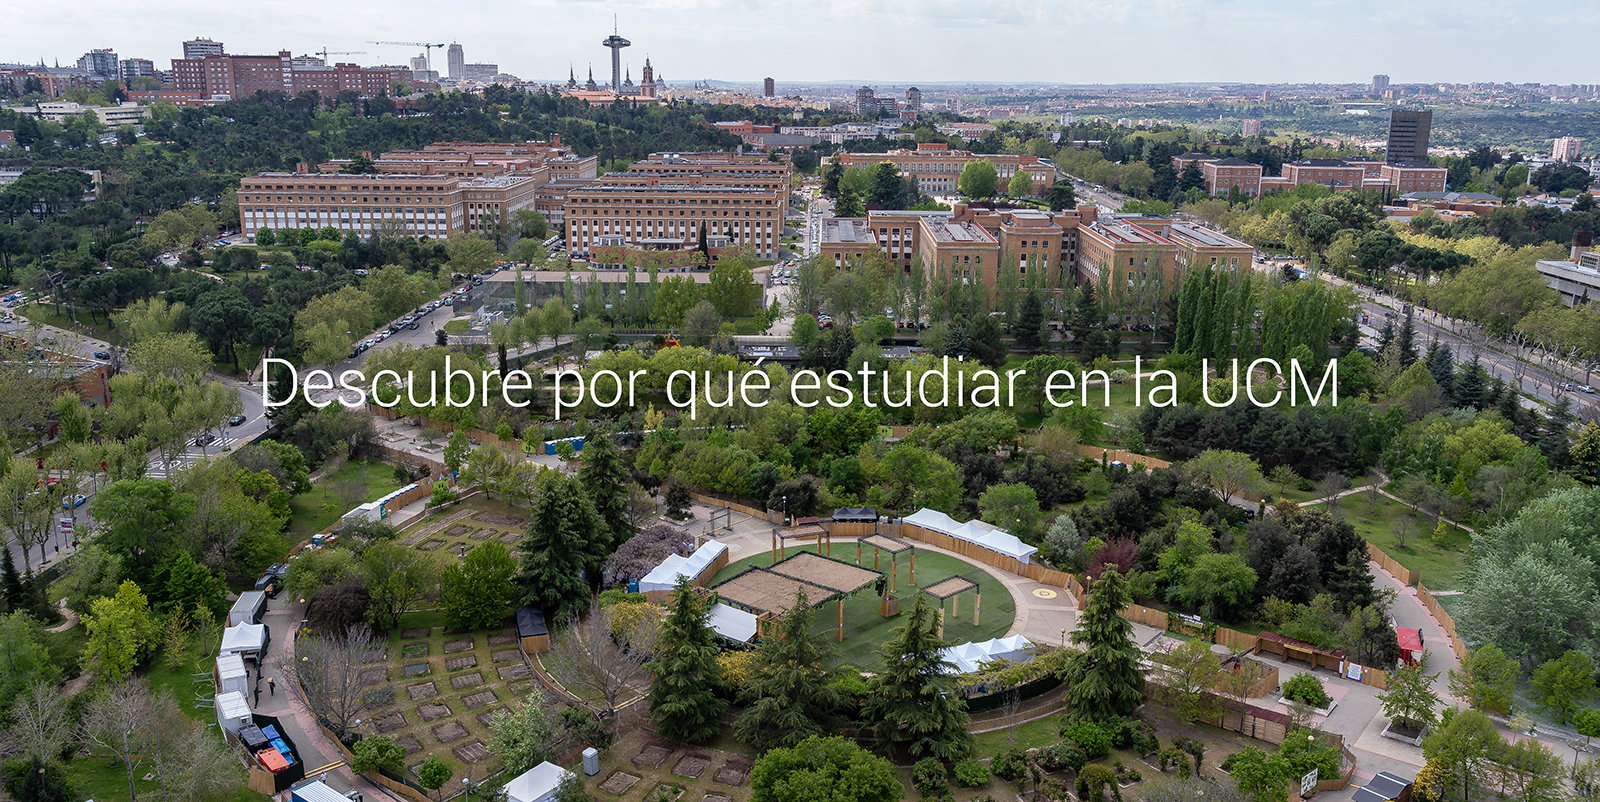 La mayor universidad presencial de España y con la mejor oferta educativa, cultural y deportiva